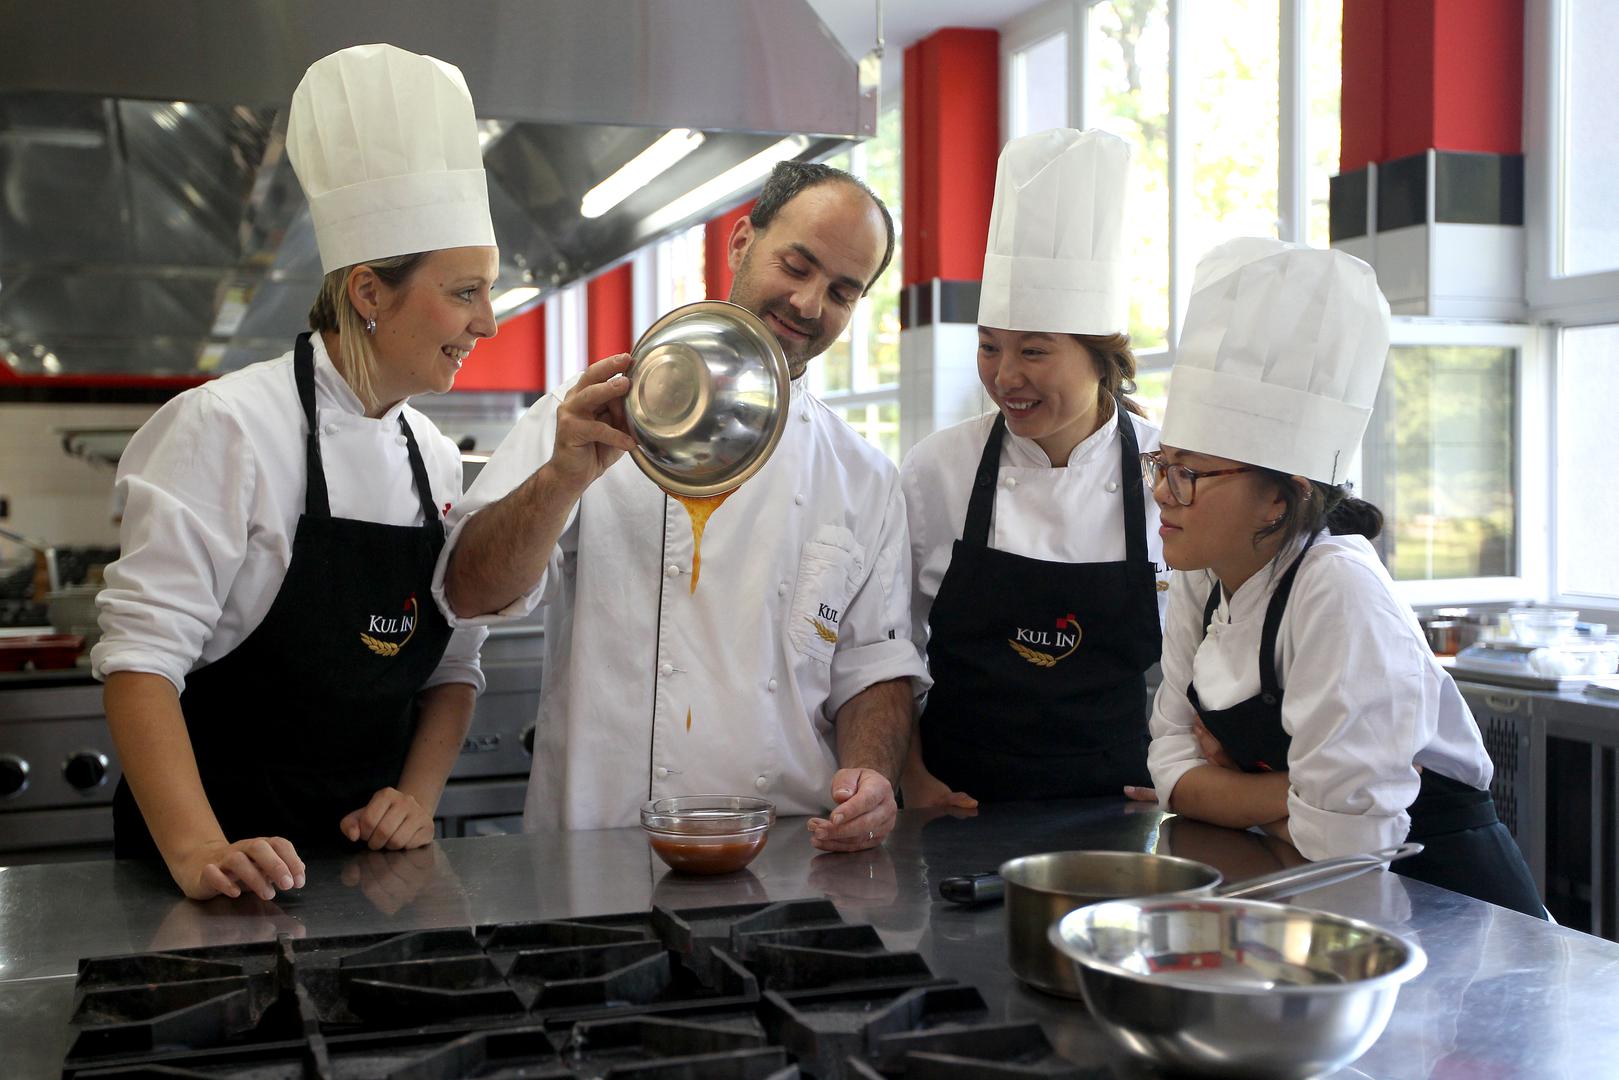 Međunarodni kulinarski institut u koji dolaze učenici iz cijelog svijeta, pa i iz Kine: u Kul Inu prolaze tečaj kuhanja ili rada slastica